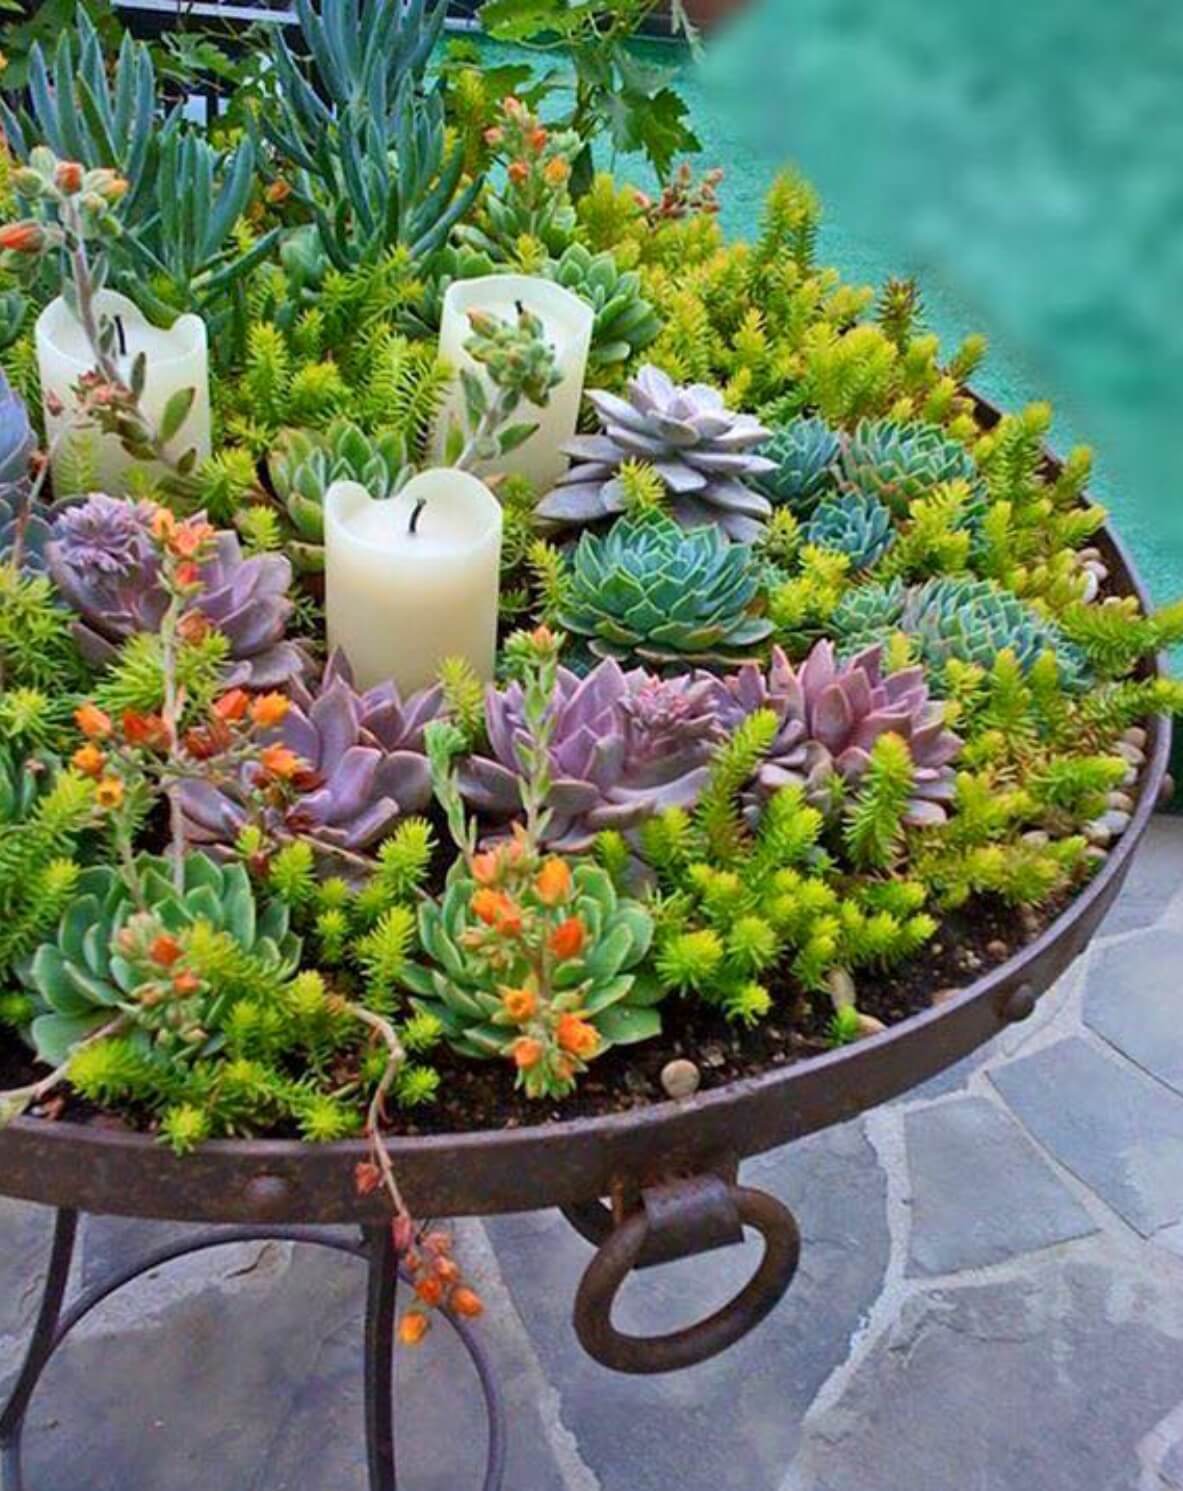 Succulent Garden Ideas: Garden of Life